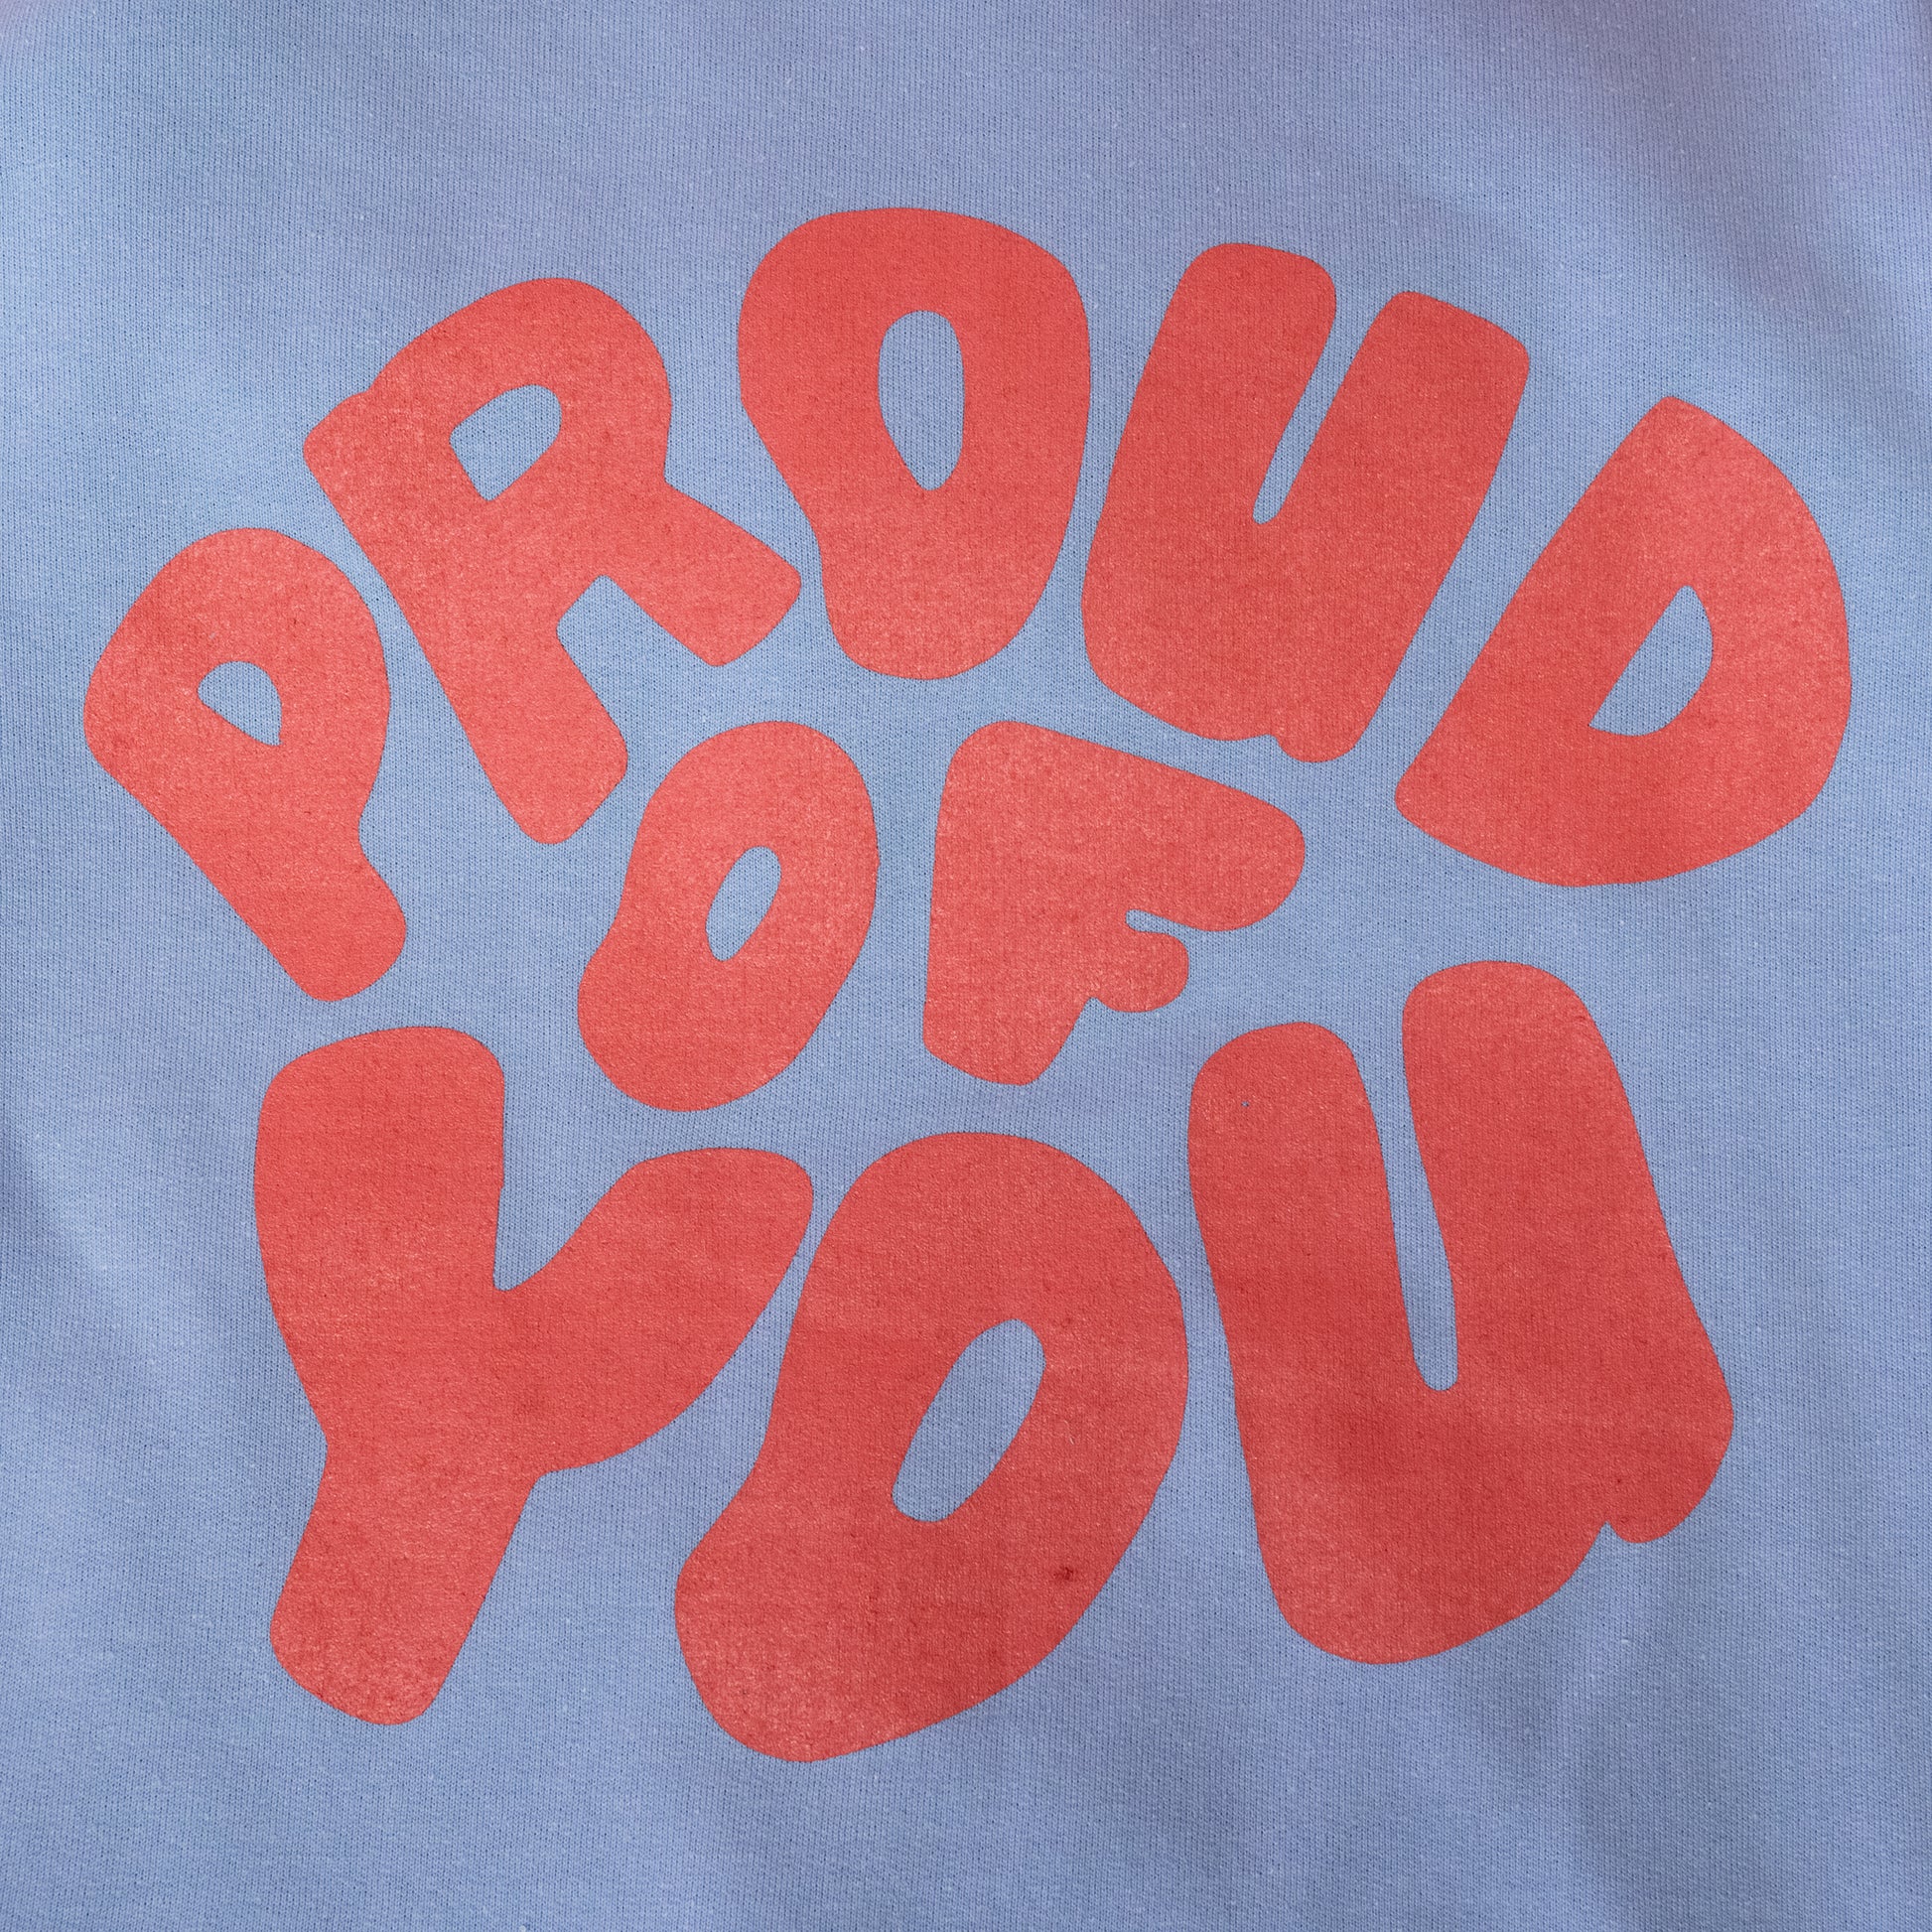 proud of you pink writing on sweatshirt